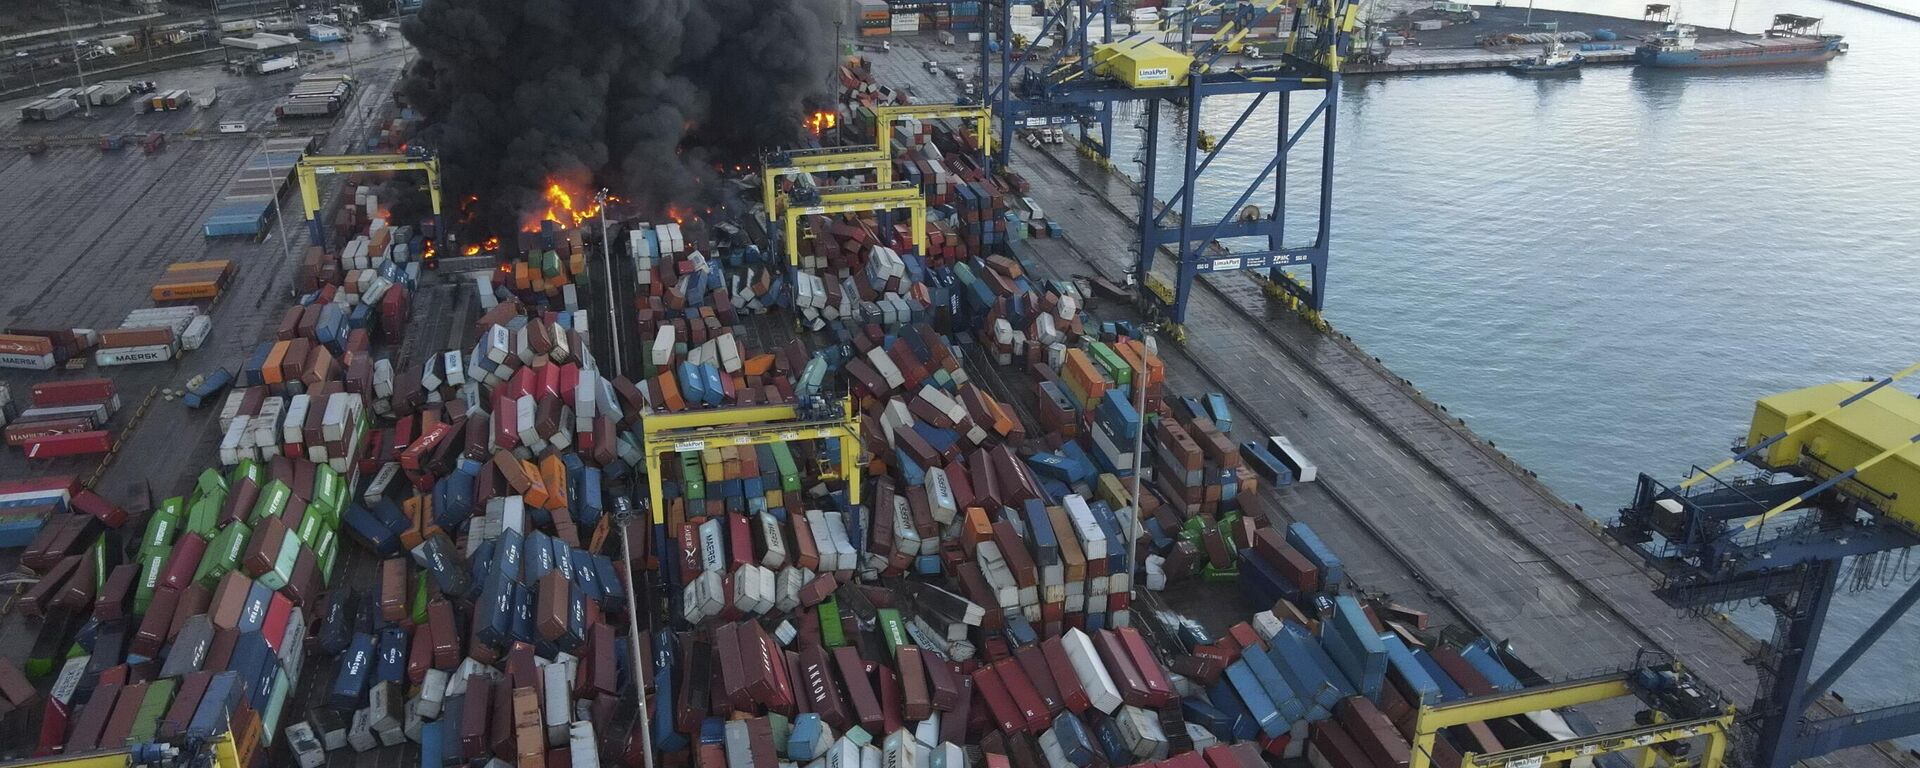 دخان يتصاعد من حاويات مشتعلة في ميناء ببلدة إسكندرونة التي ضربها الزلزال، جنوب تركيا، 7 فبراير 2023. - سبوتنيك عربي, 1920, 07.02.2023